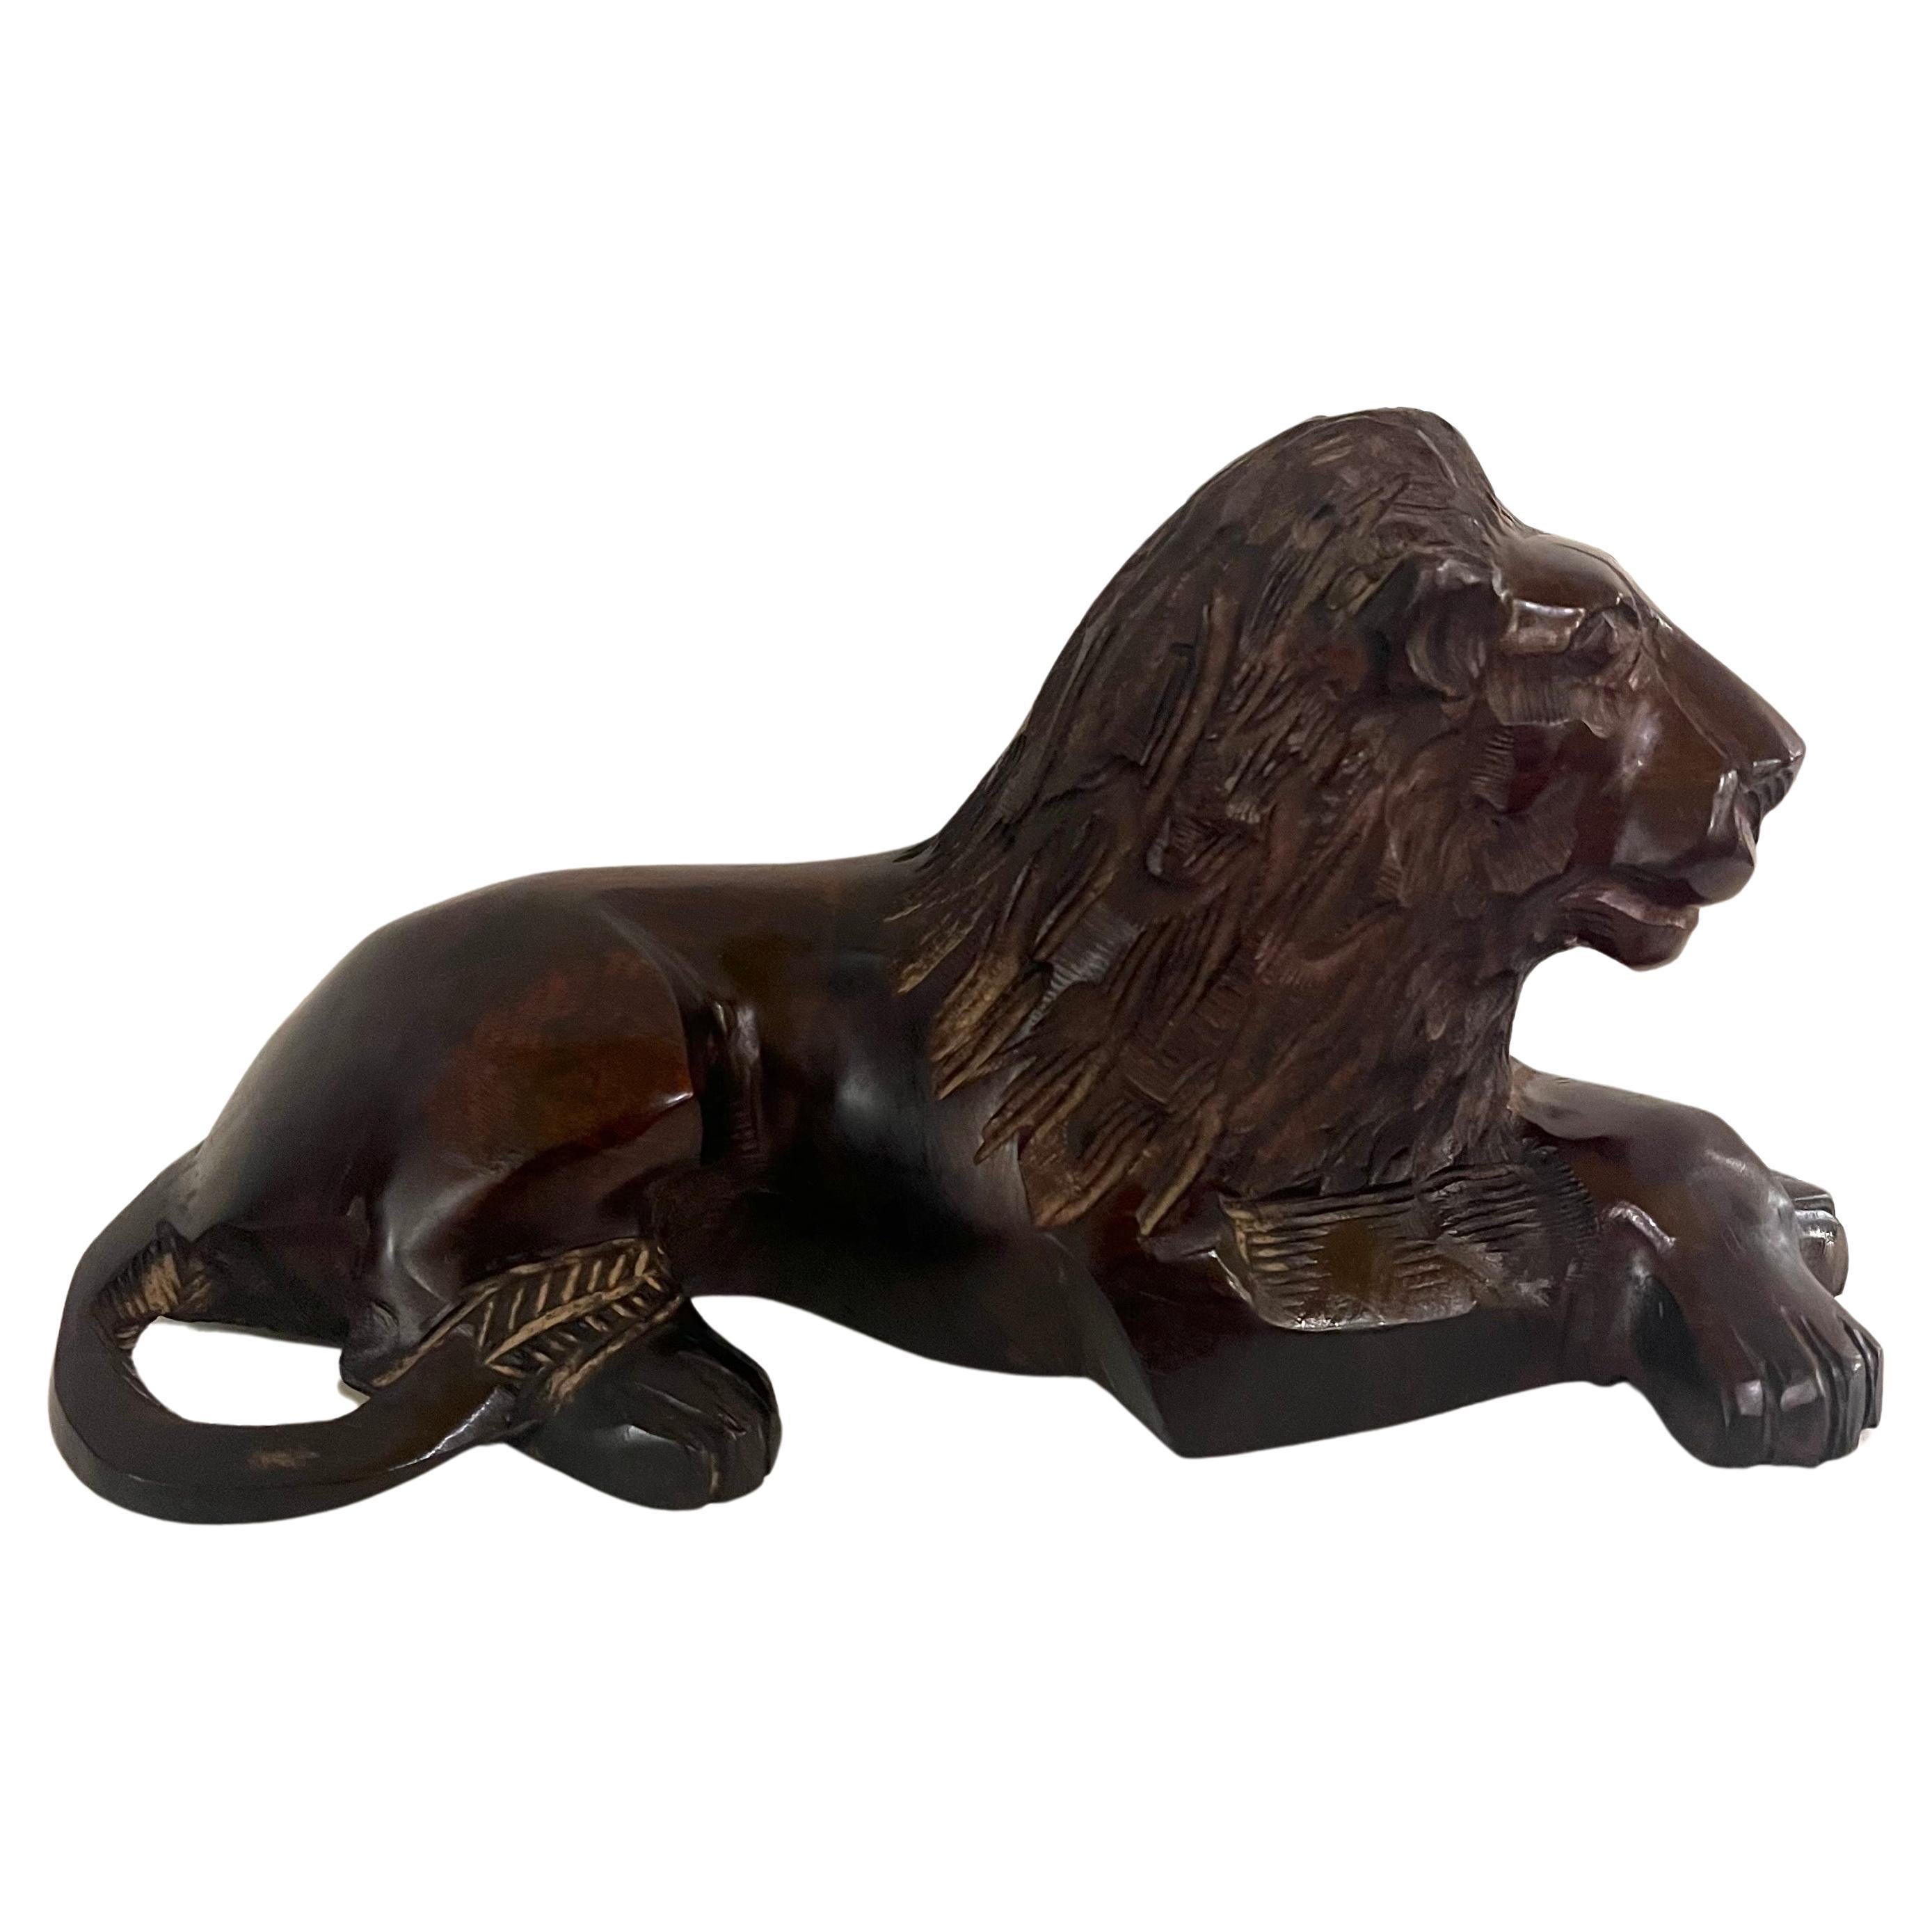 Magnifique sculpture de lion en bois de fer excotique sculptée à la main